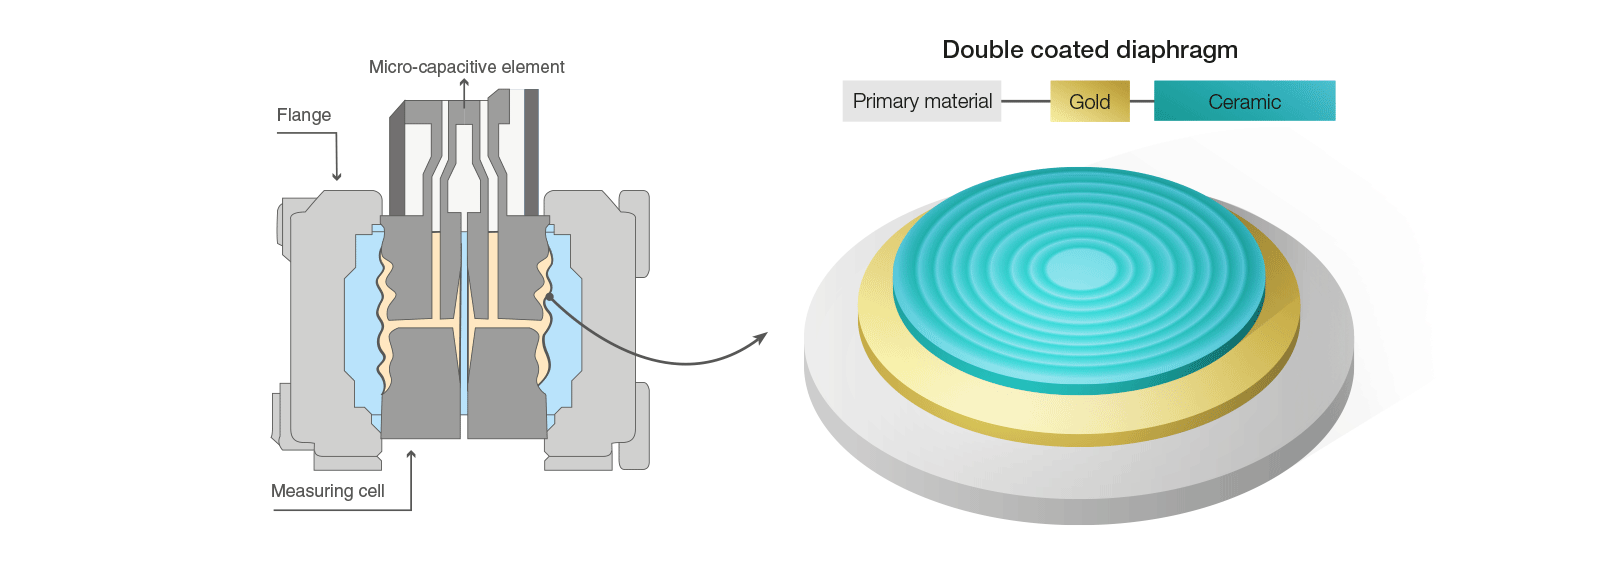 диаграмма мембранного датчика давления для водорода